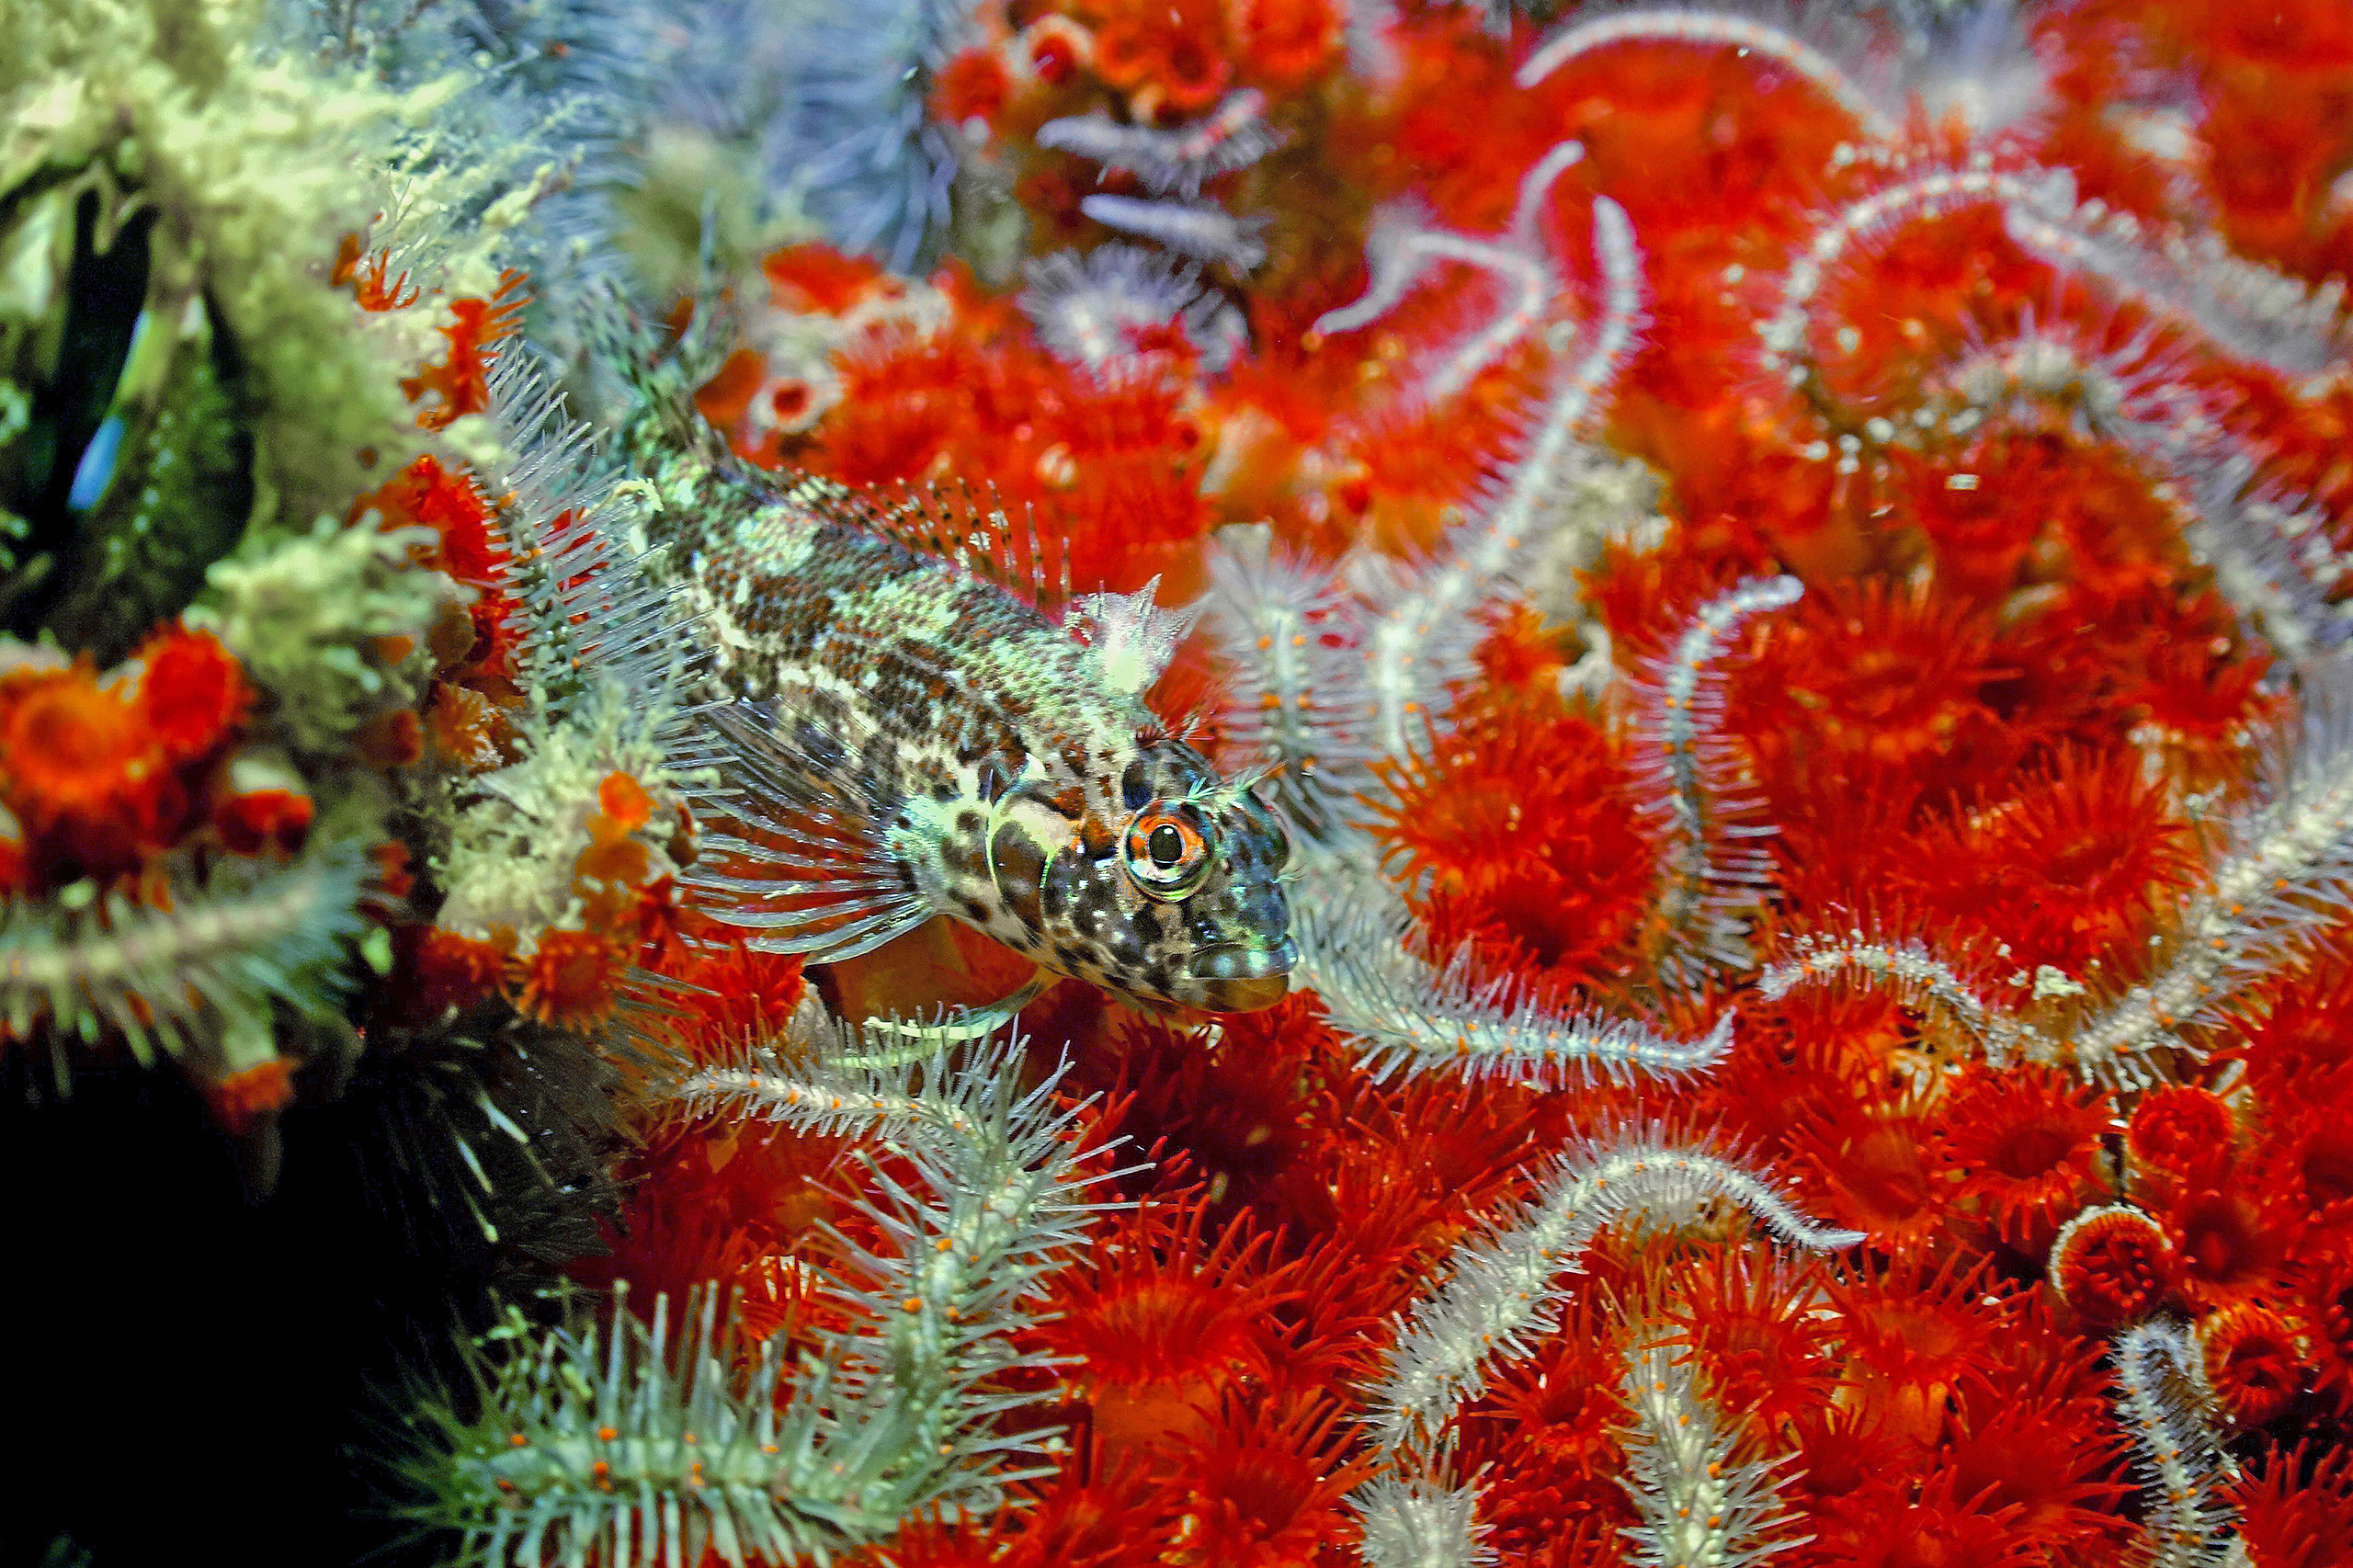 Peixe da espécie Malacoctenus tetranemus nada em meio às anêmonas e estrelas-do-mar